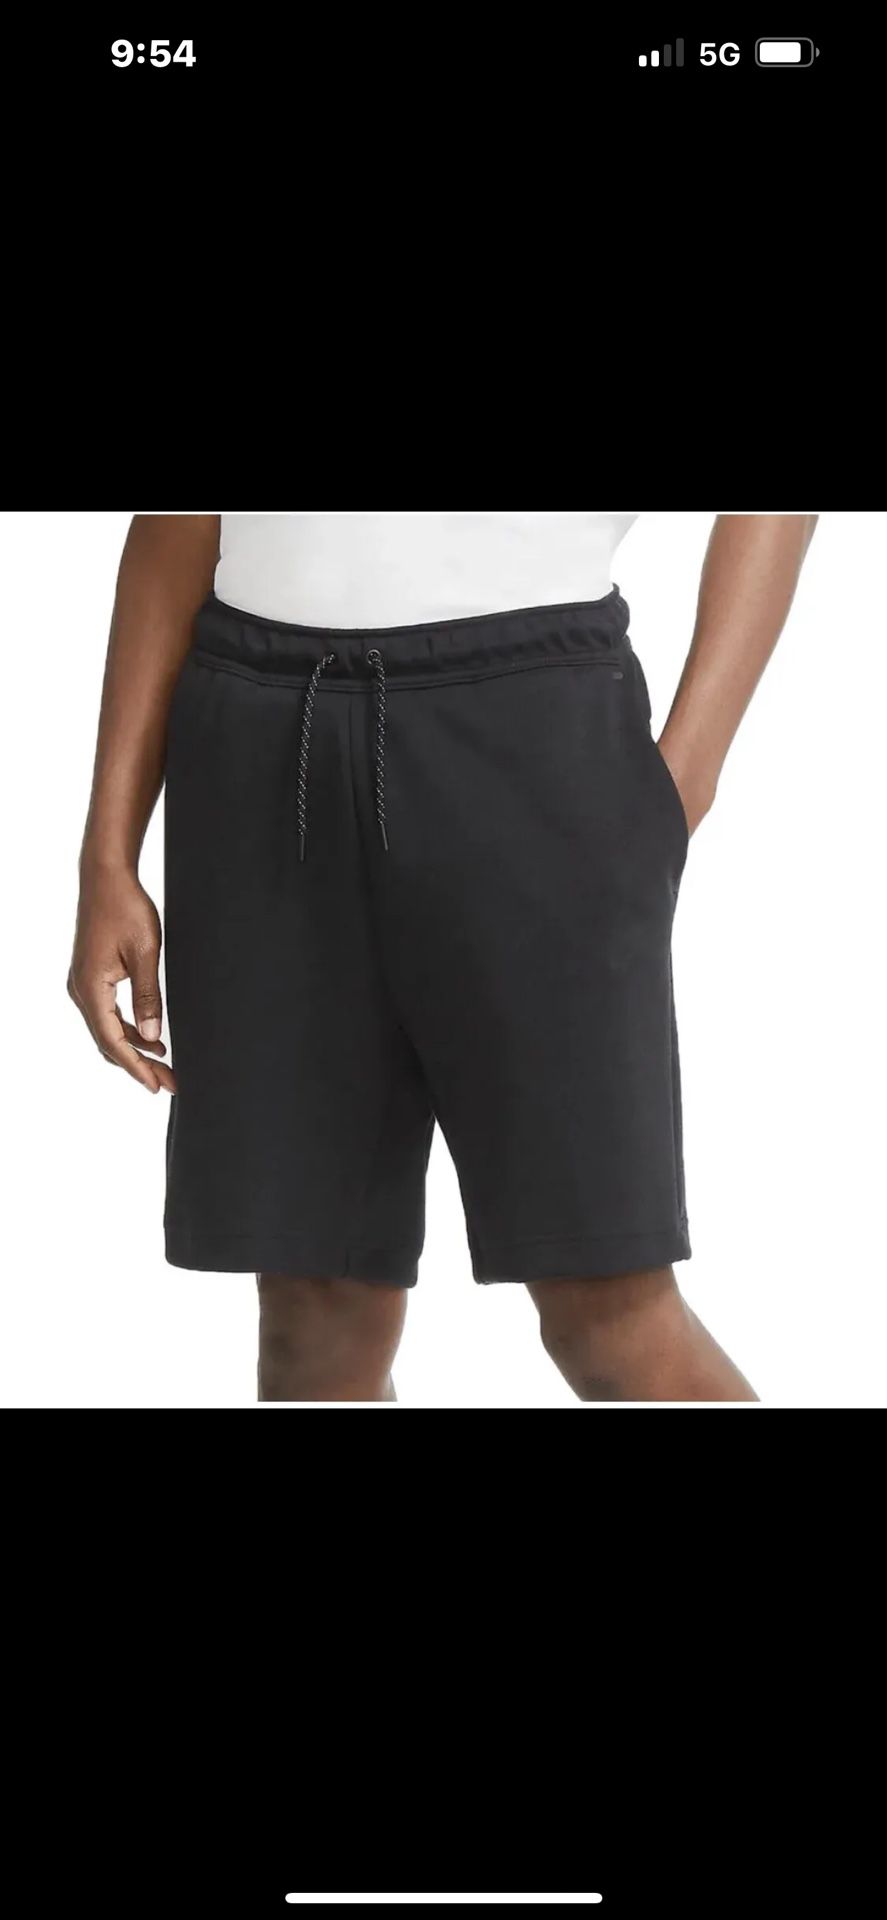 Nike Sportswear Tech Fleece Shorts Triple Black CU4503-010 Men Size XS